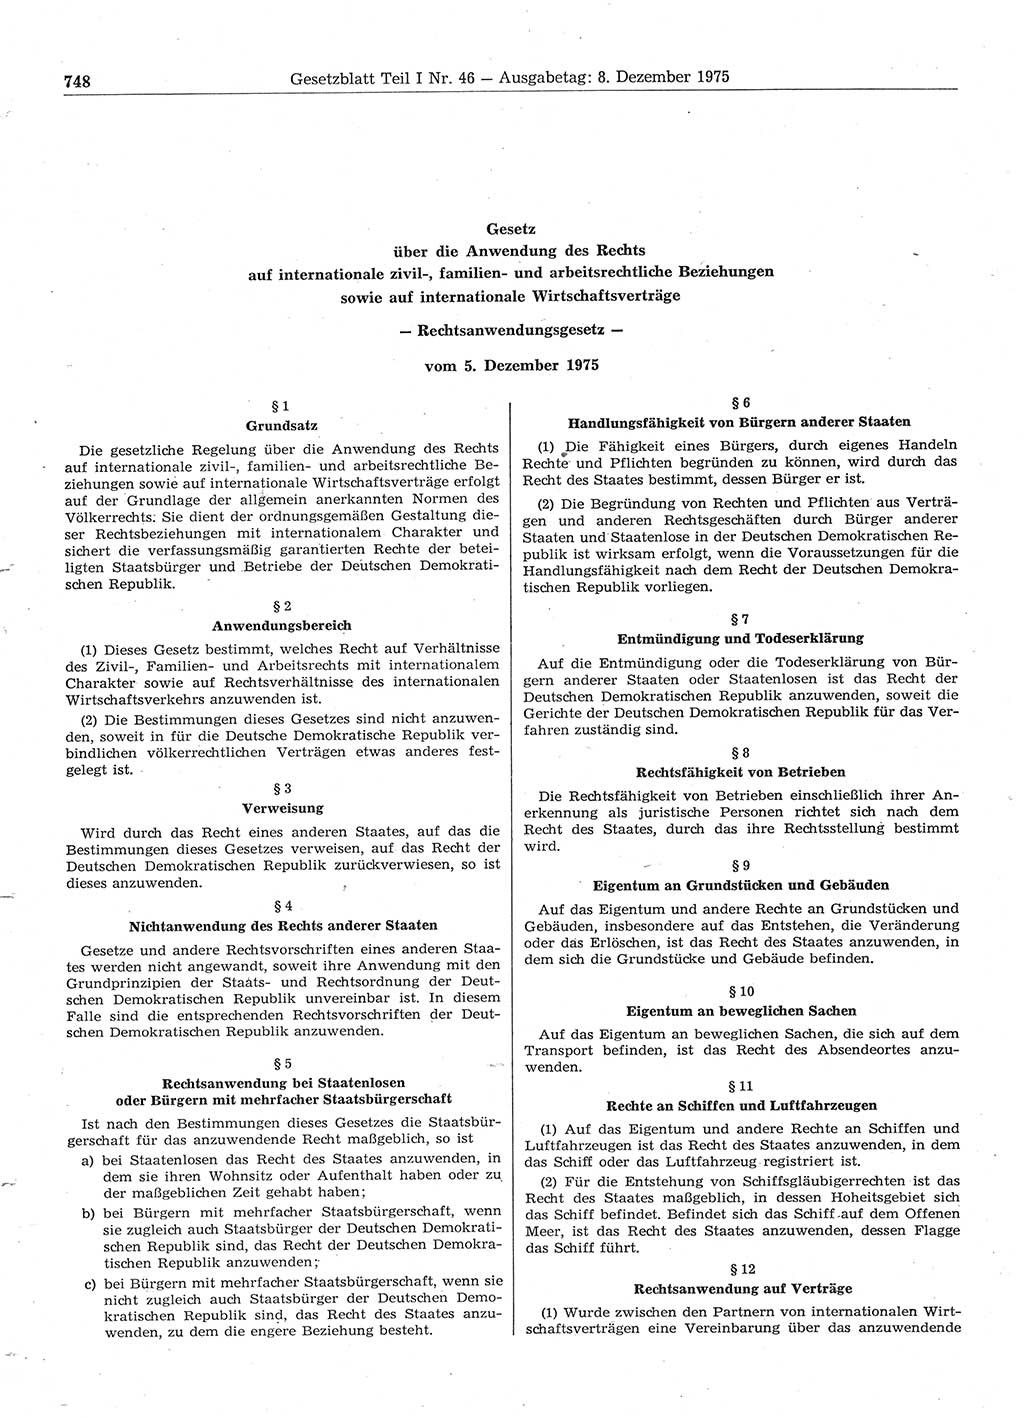 Gesetzblatt (GBl.) der Deutschen Demokratischen Republik (DDR) Teil Ⅰ 1975, Seite 748 (GBl. DDR Ⅰ 1975, S. 748)